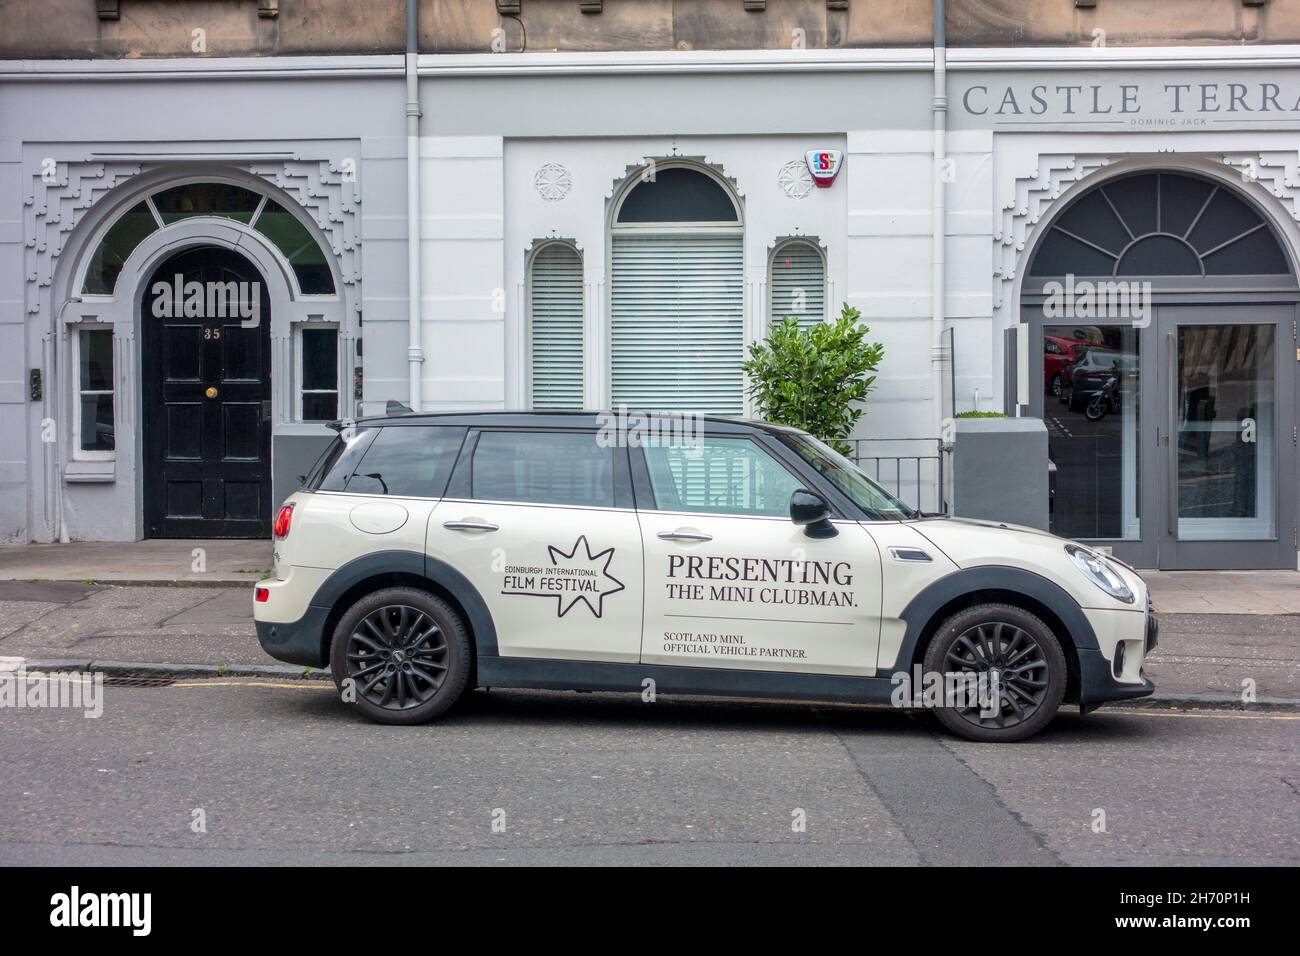 2017 Mini Clubman Edinburgh International Film Festival Vehicle Partnerschaft Mit Schottland Mini Geparkt Auf Castle Terrace Edinburgh Schottland Stockfoto